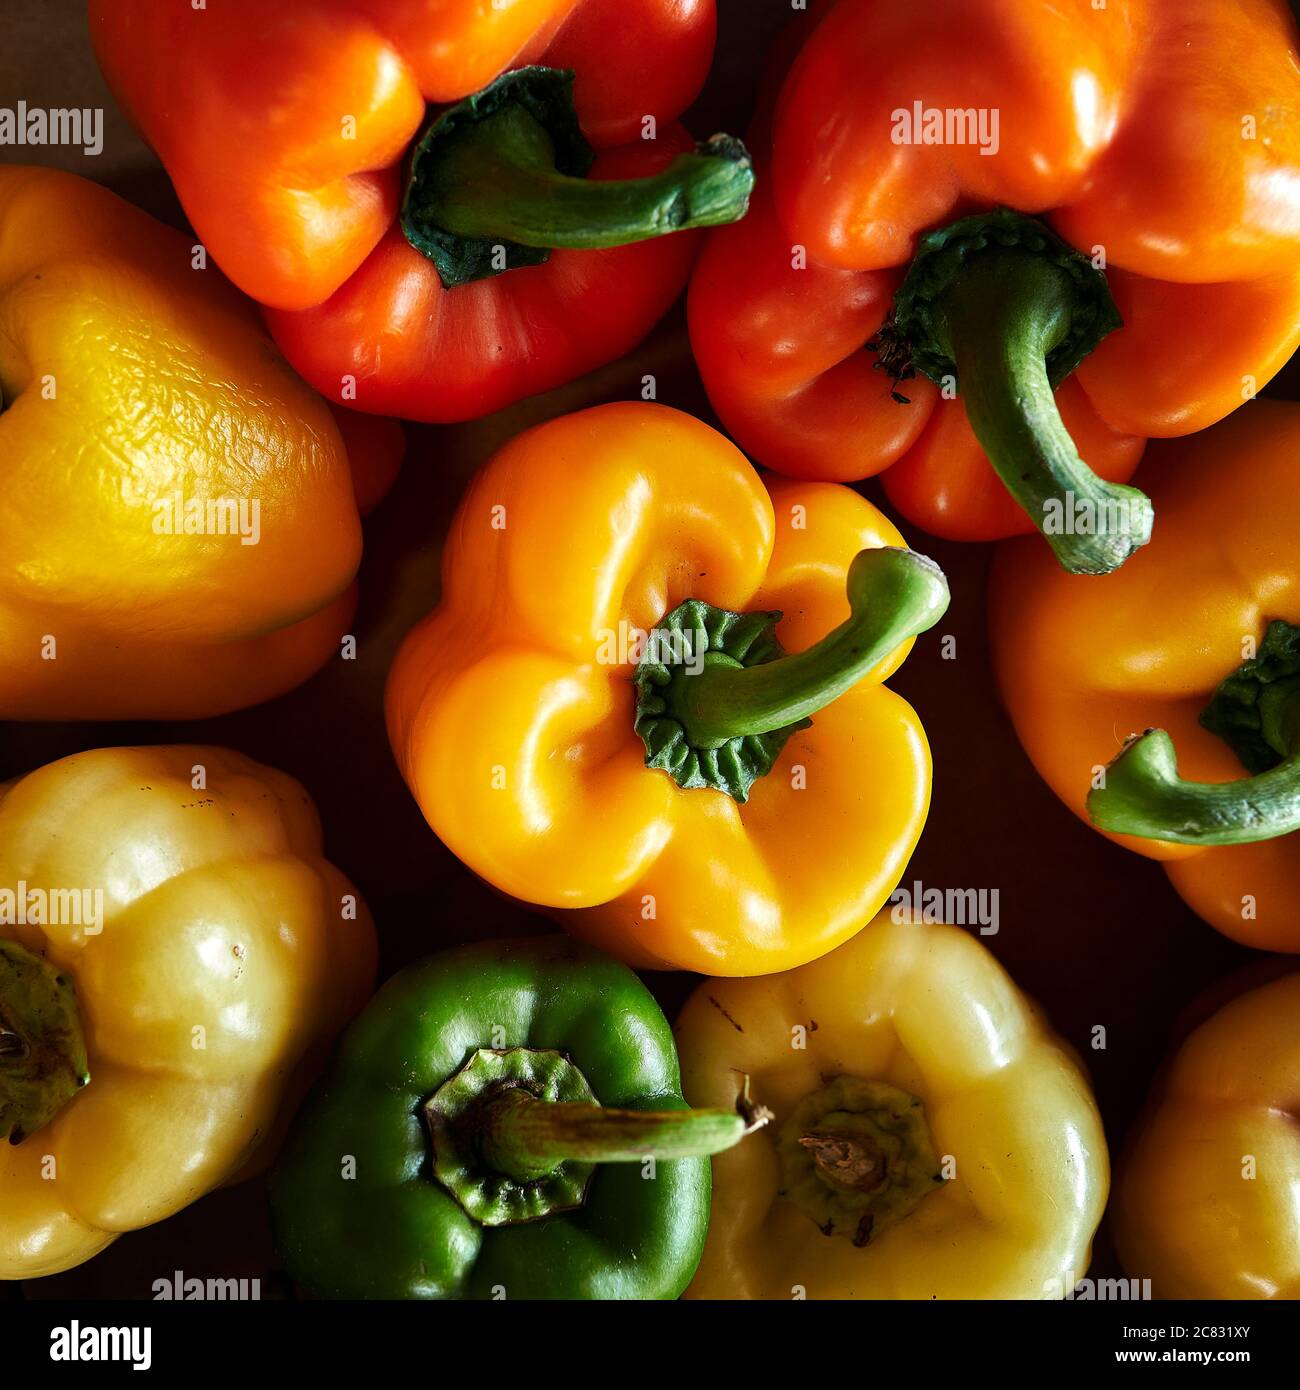 Peperoni gialli, verdi e arancioni in esposizione di verdure fresche, in vendita in azienda o nel mercato agricolo. Foto Stock